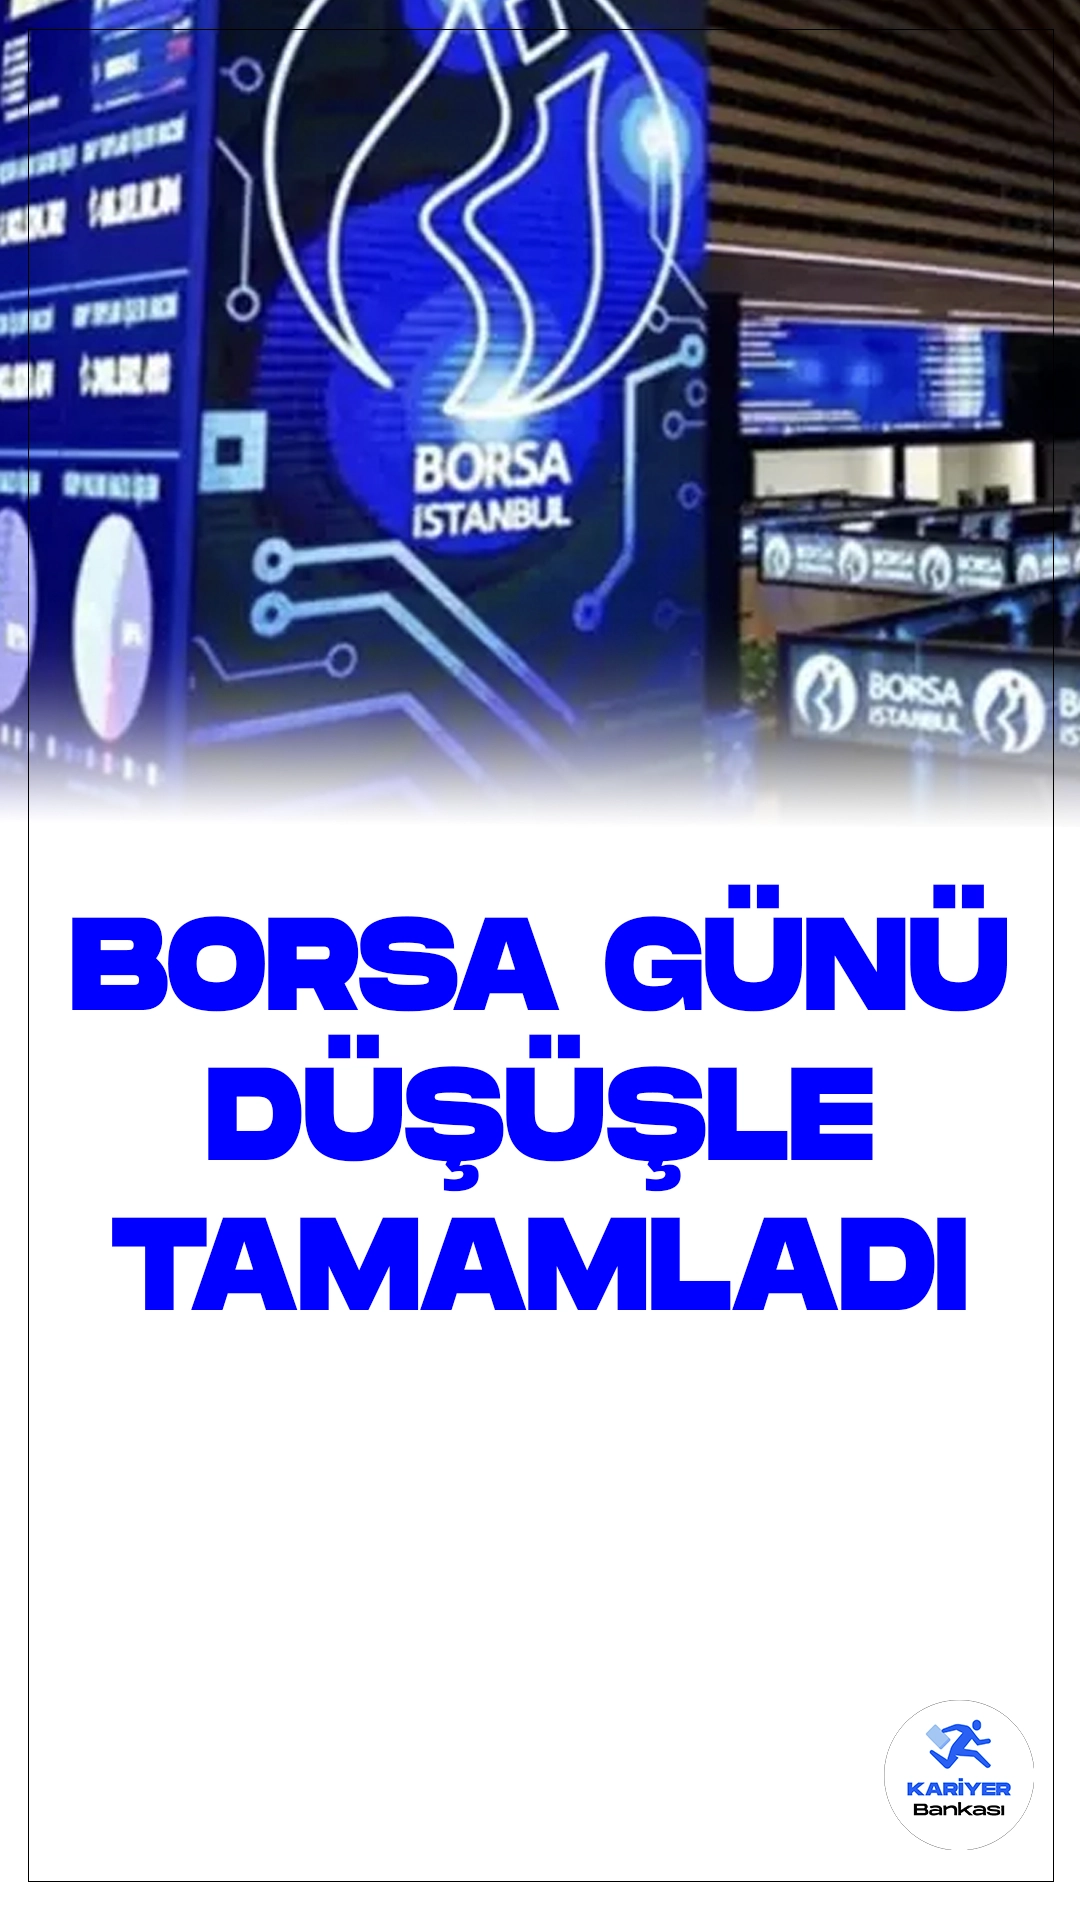 Borsa Günü Düşüşle Tamamladı.Borsa İstanbul'da BIST 100 endeksi, günü yüzde 1,31 değer kaybederek 8.744,58 puandan tamamladı. Bu düşüşle birlikte endeks, önceki kapanışa göre 115,93 puan azaldı. Toplam işlem hacmi ise 108,7 milyar lira olarak gerçekleşti.